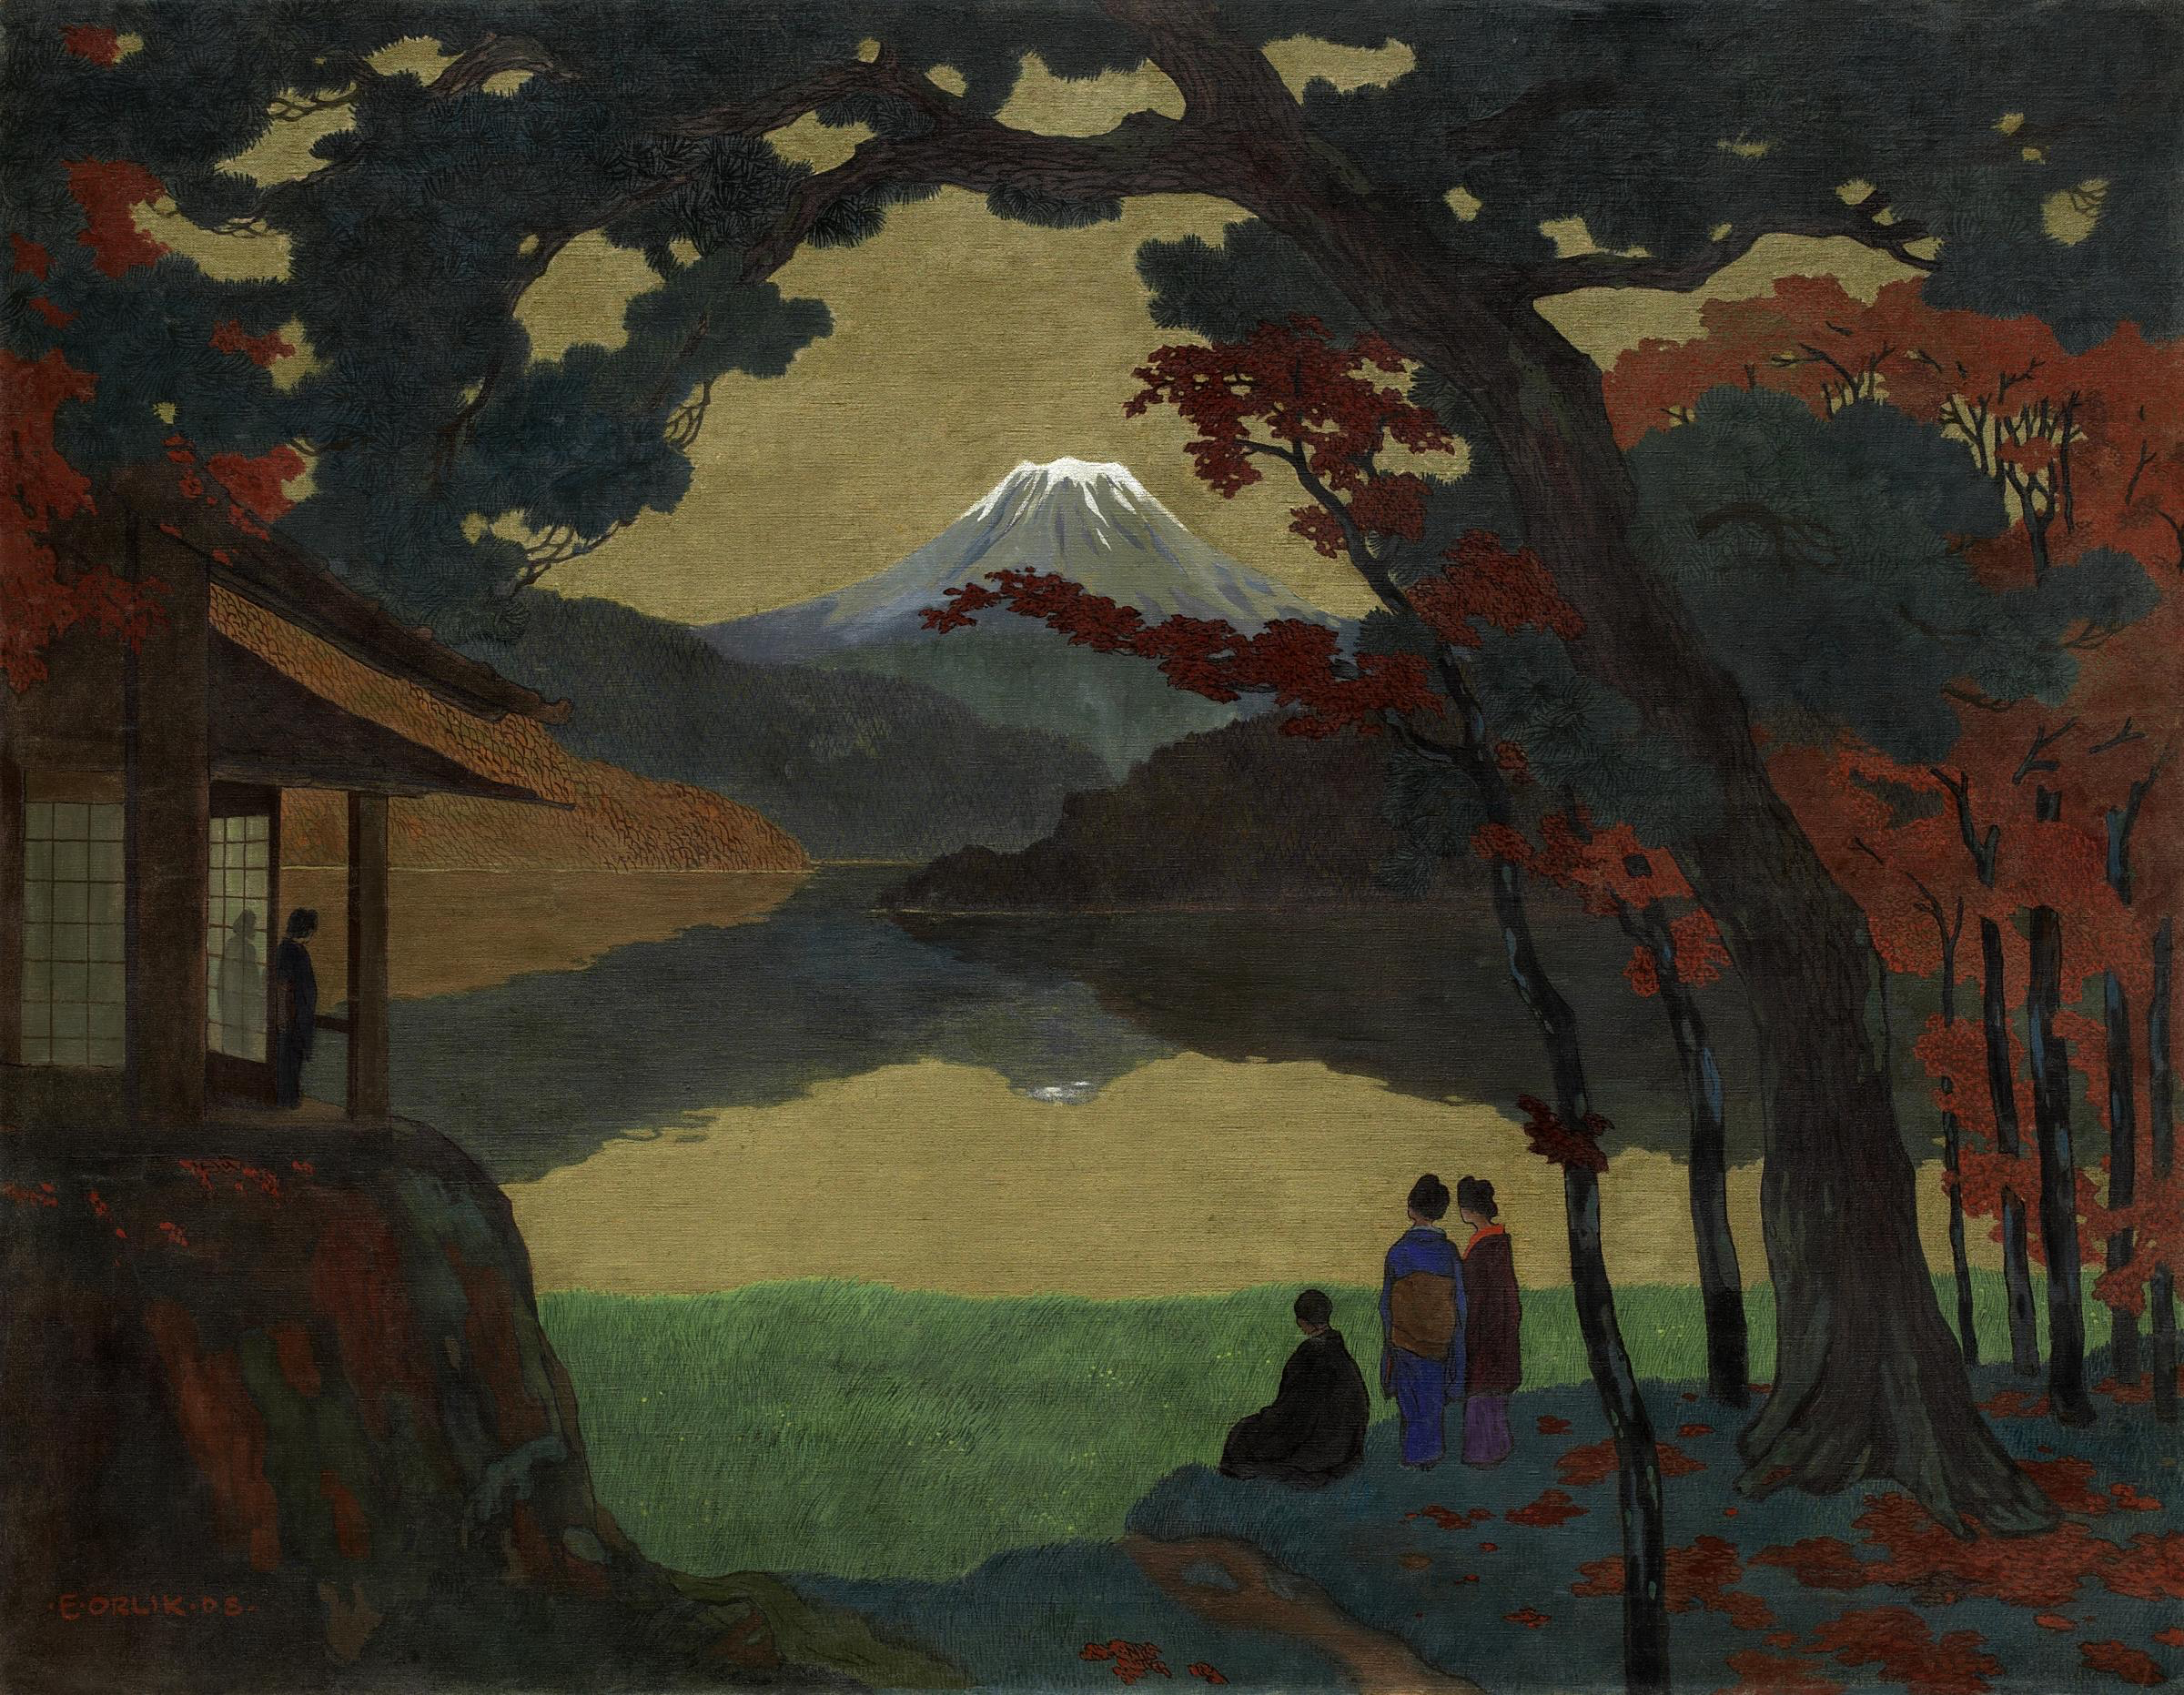 Пејзаж са планином Фуџи у даљини by Emil Orlik - 1908. - 120.5 x 154.5 cm 